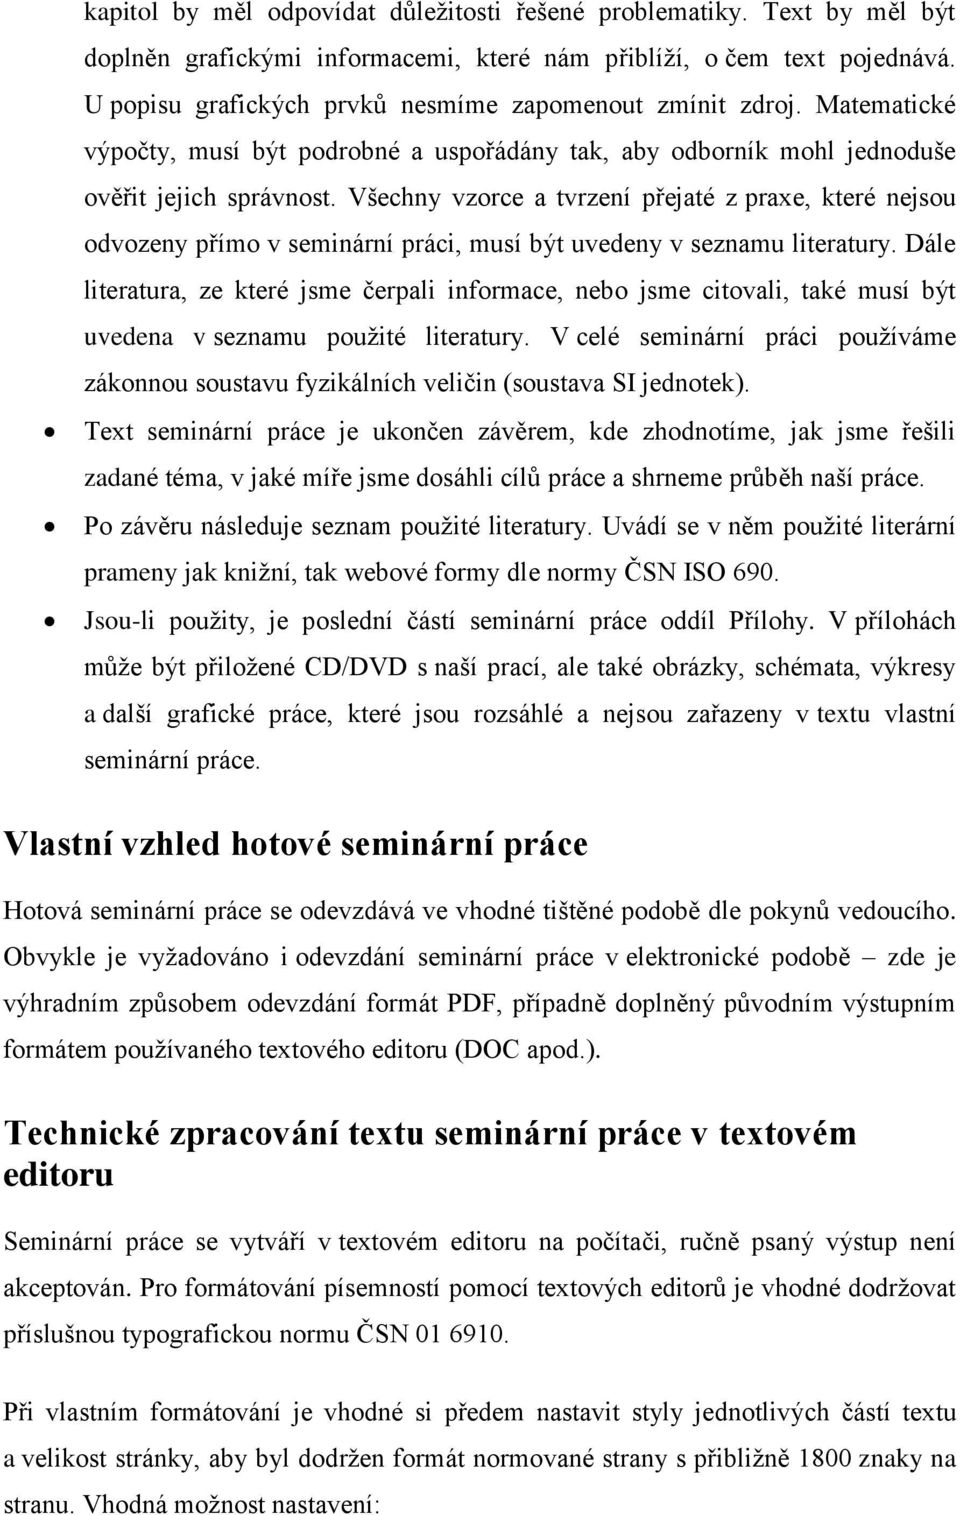 Seminární práce obecné a technické pokyny - PDF Stažení zdarma